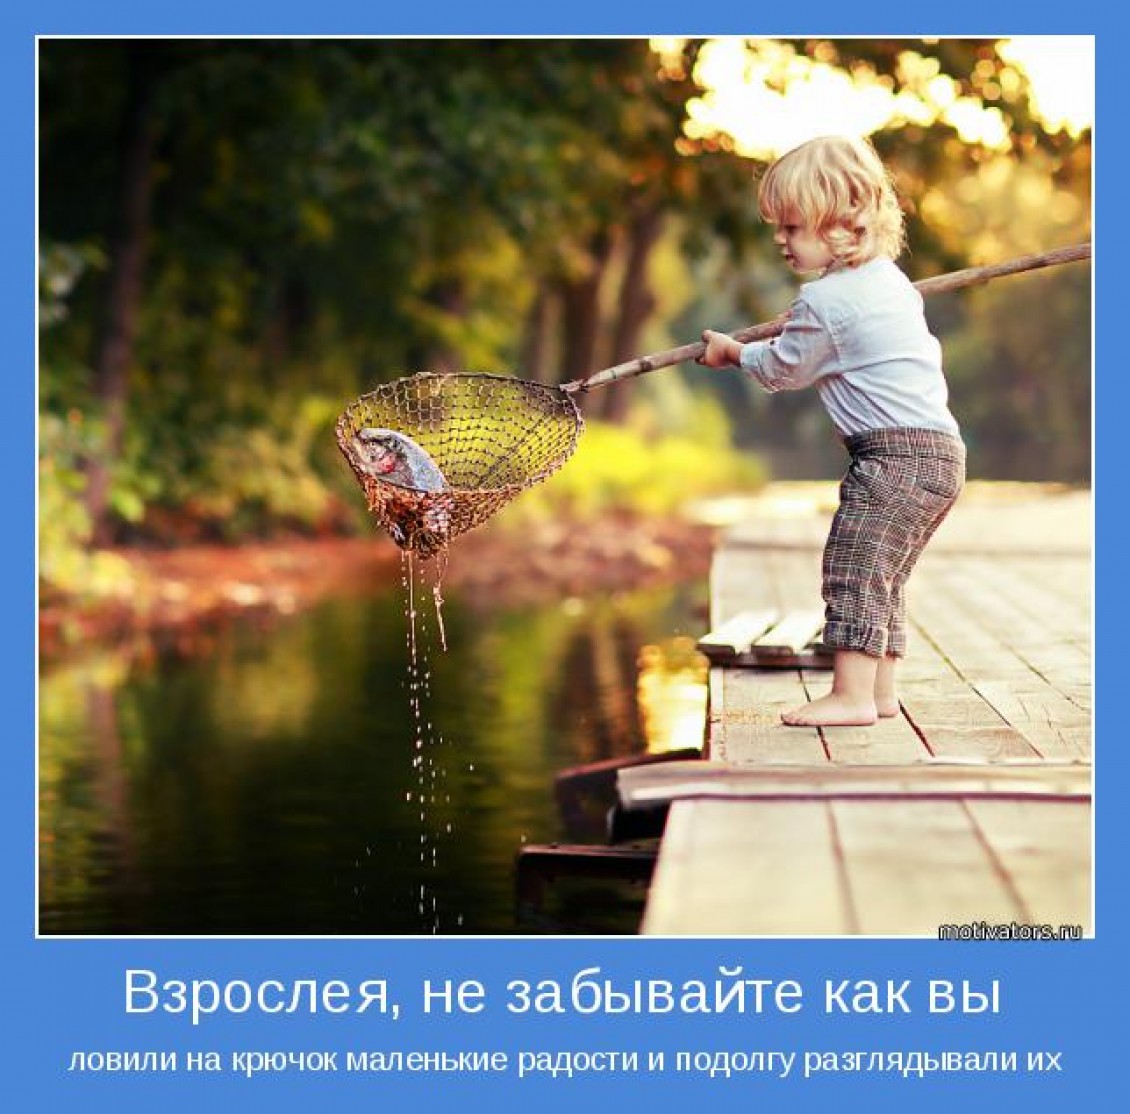 Жизнь это видеть счастья. Радостные моменты в жизни. Маленькие радости жизни. Прекрасные моменты жизни. Дети радость жизни.